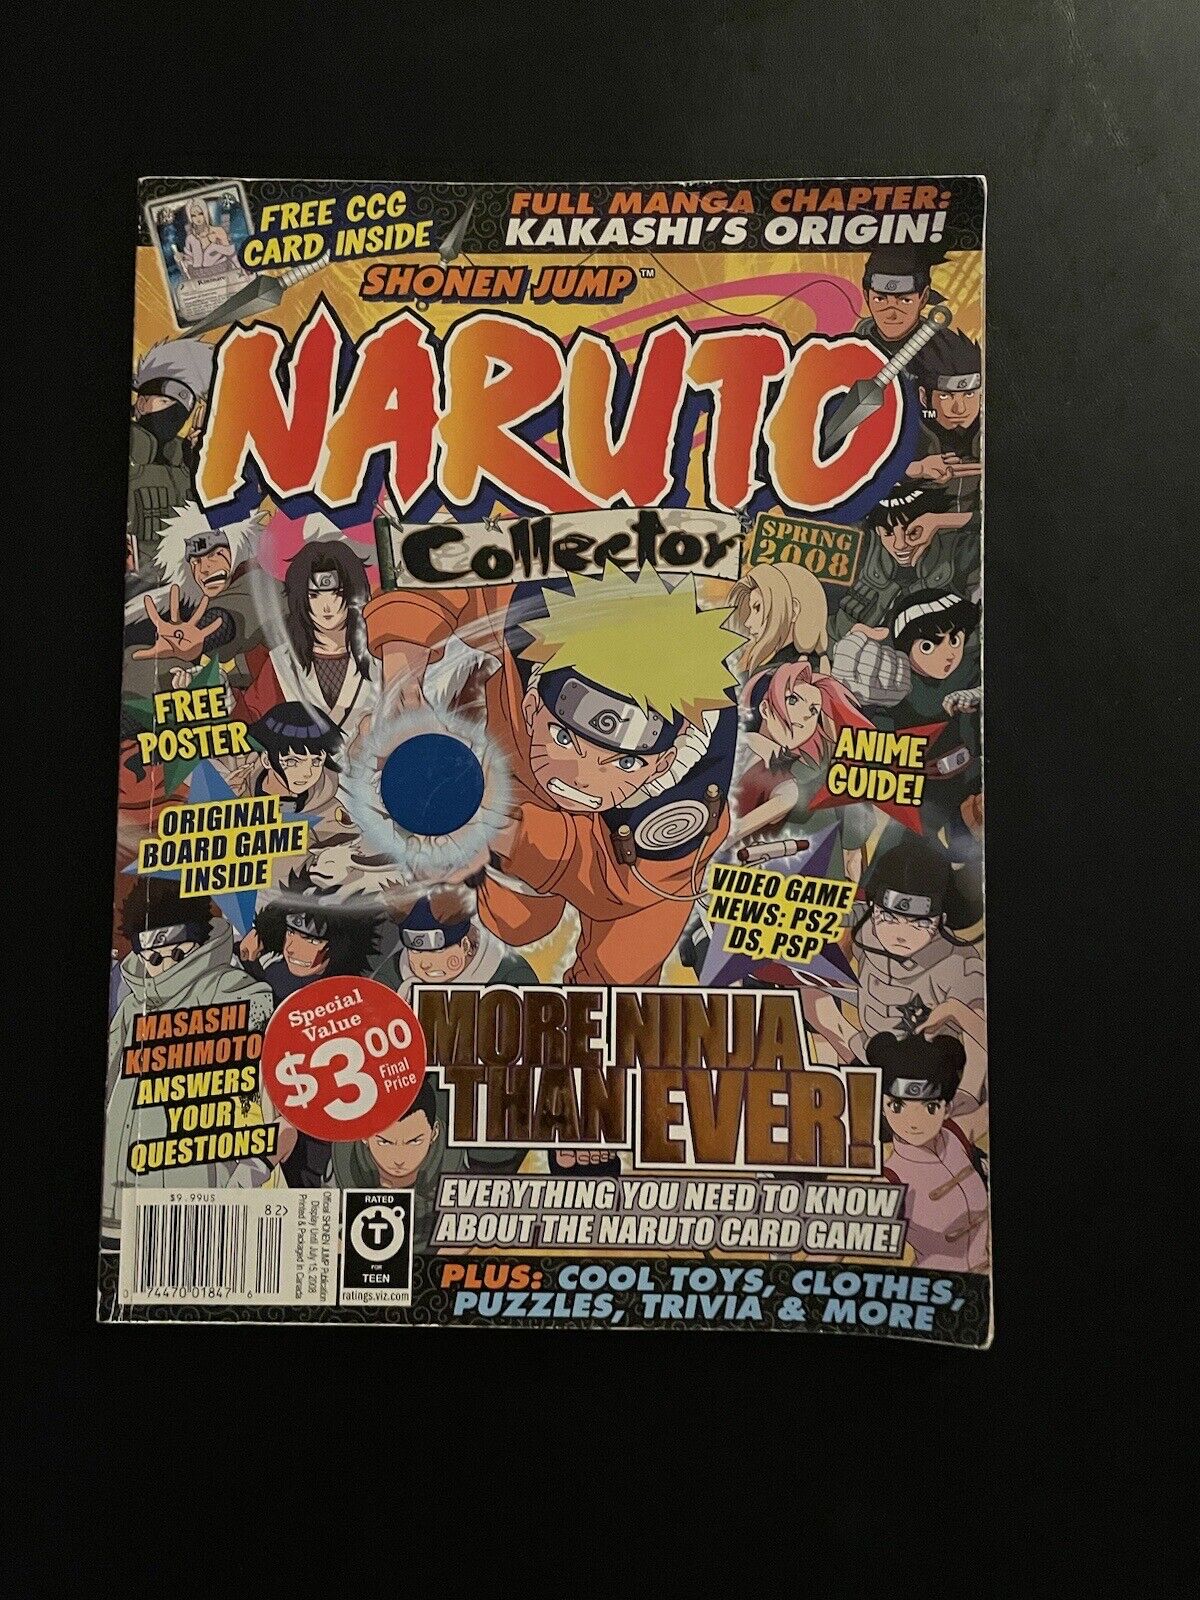 Naruto Collector Spring 2008 Magazine, Shonen Jump Publication - No Card/Poster